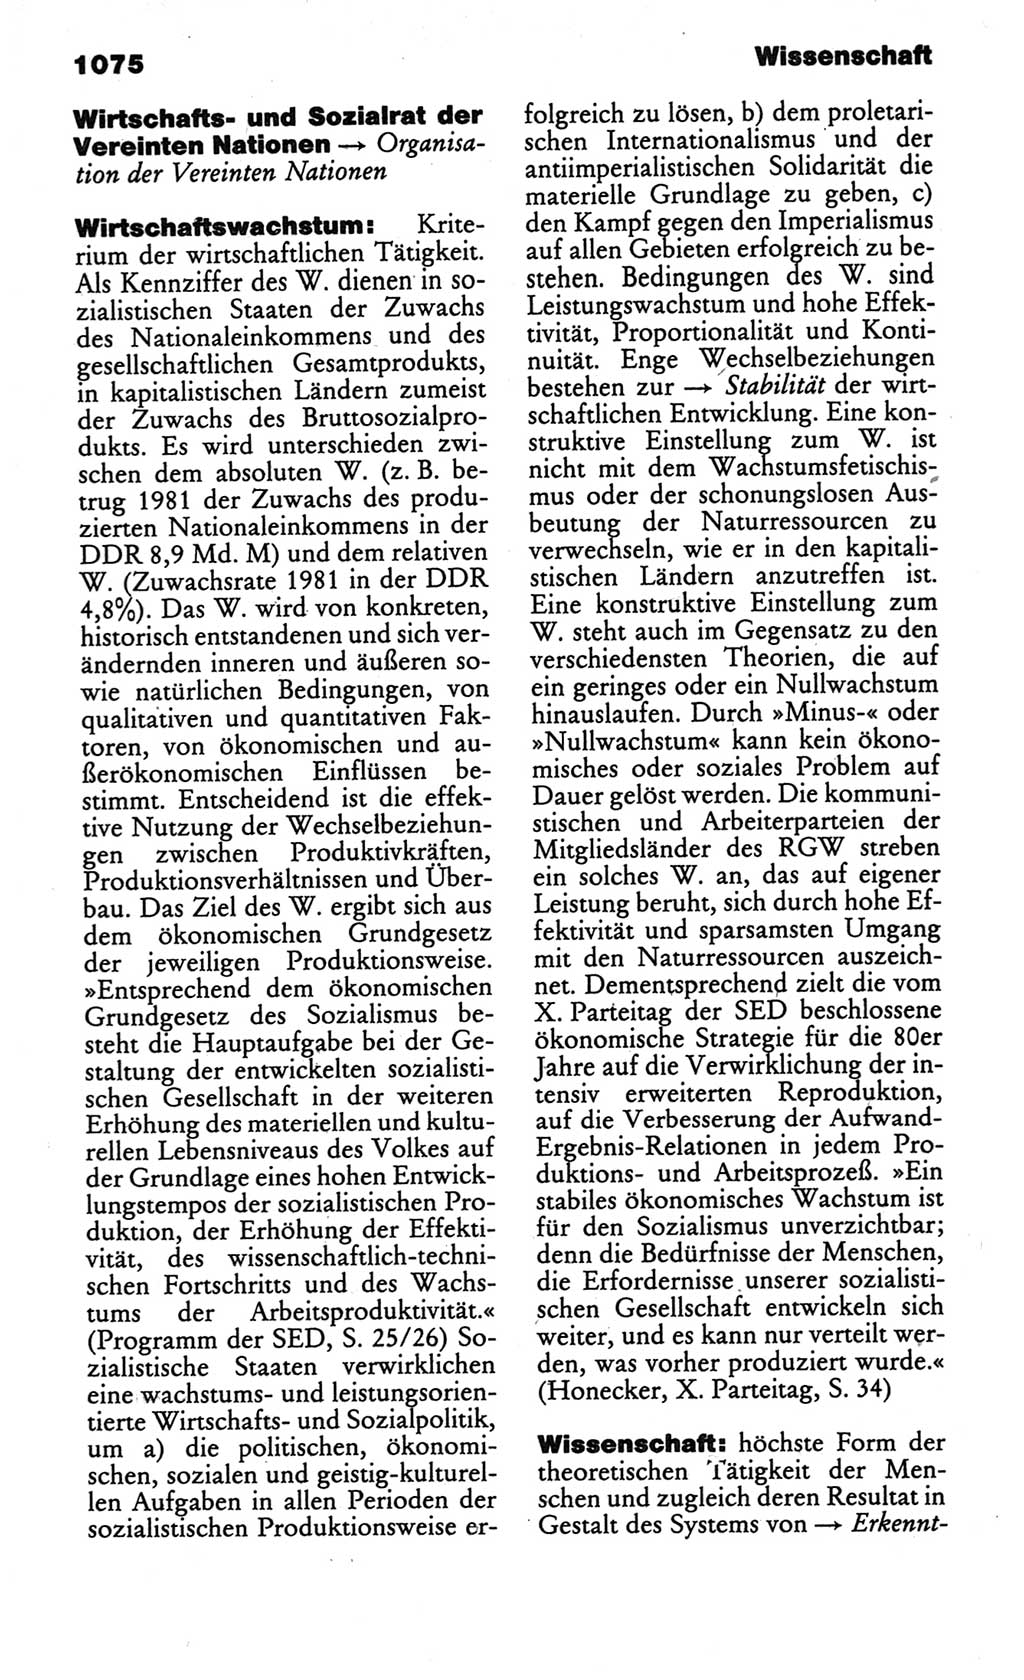 Kleines politisches Wörterbuch [Deutsche Demokratische Republik (DDR)] 1986, Seite 1075 (Kl. pol. Wb. DDR 1986, S. 1075)